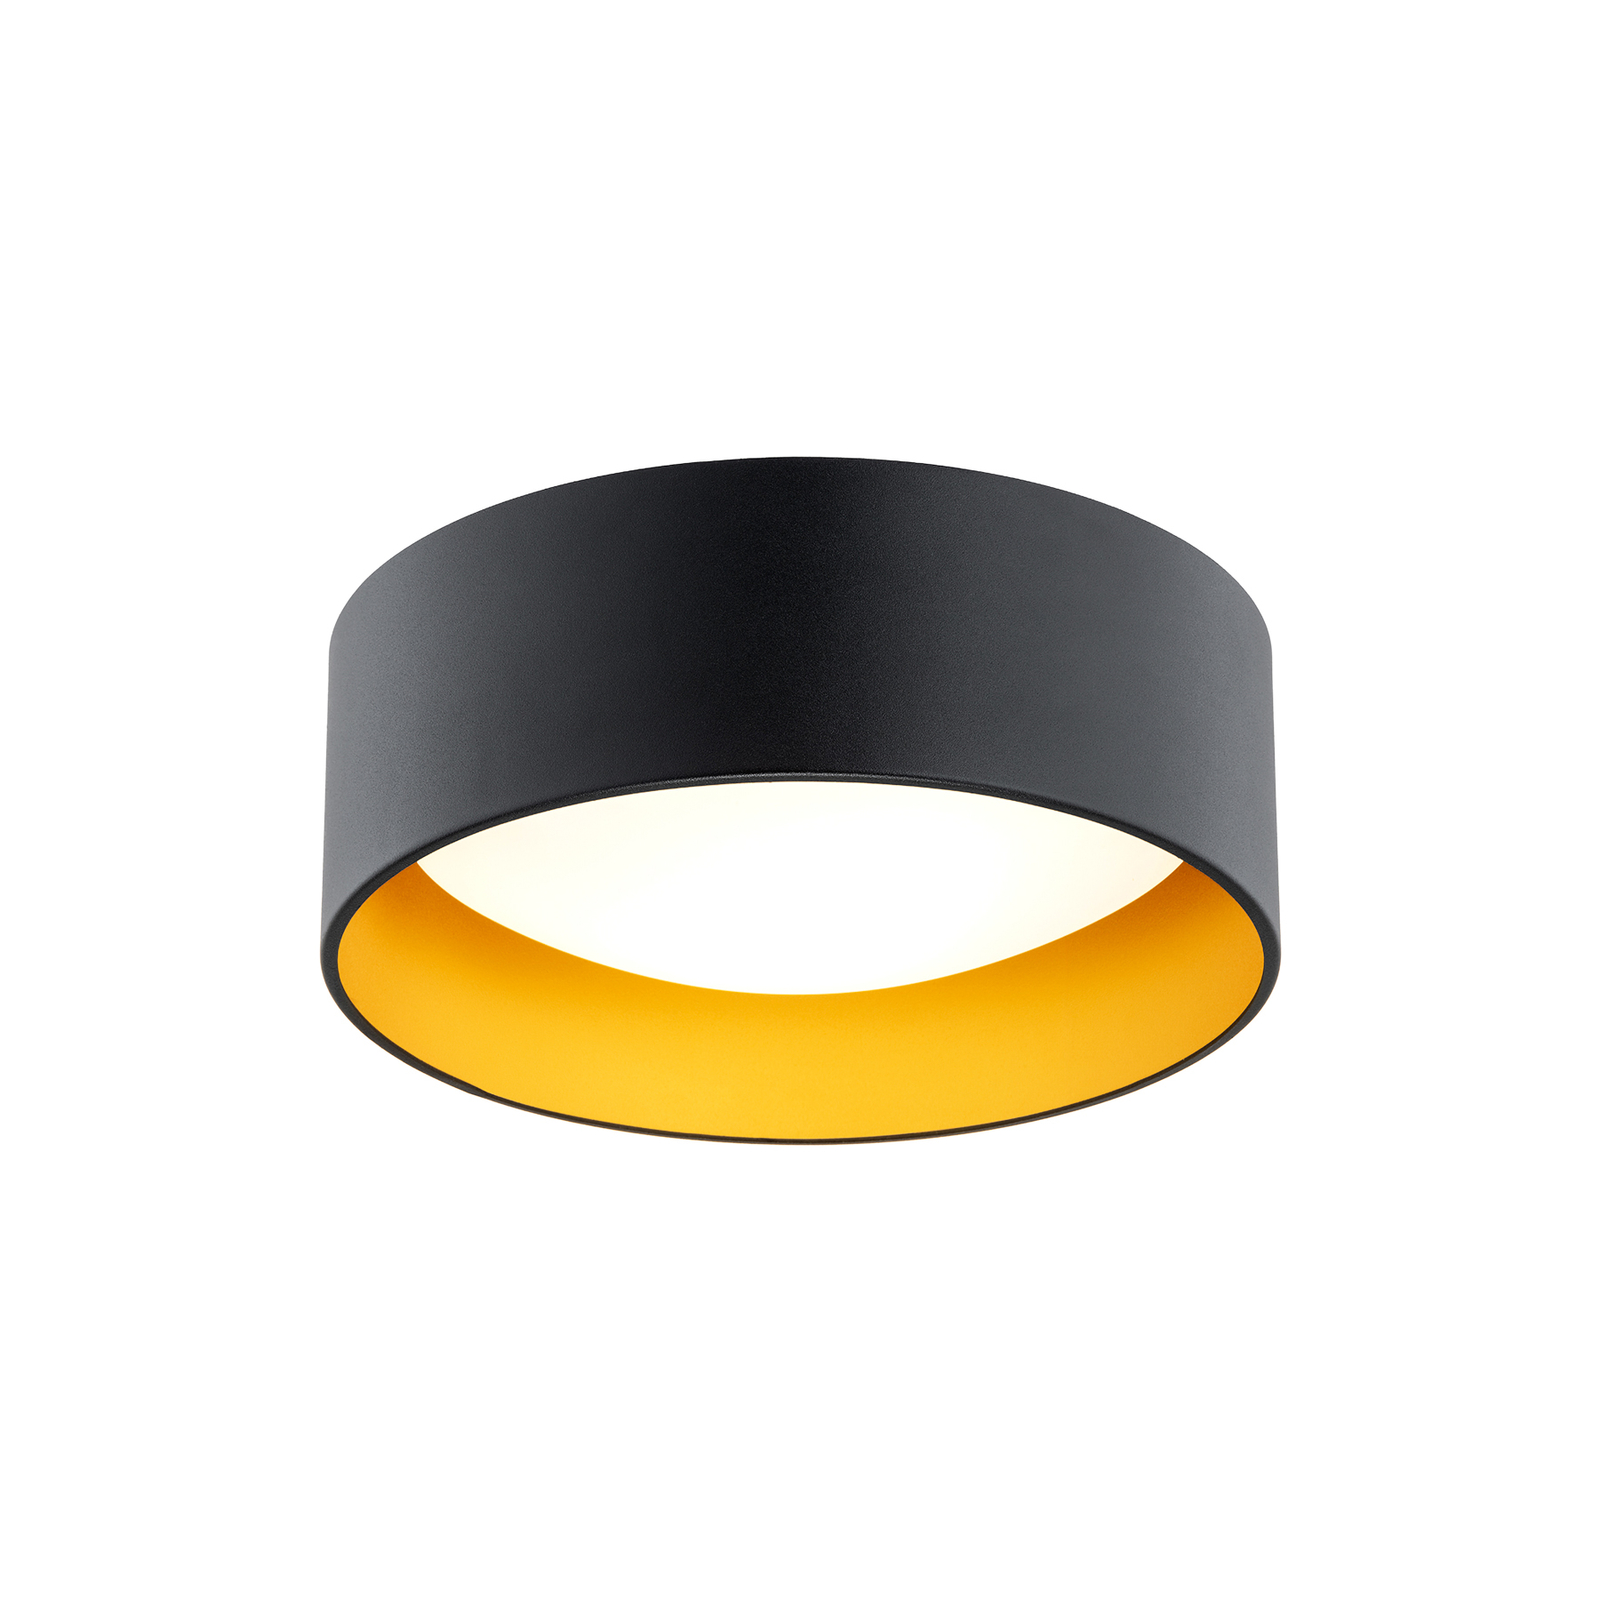 Riu plafondlamp, zwart/goud, staal, Ø 35 cm